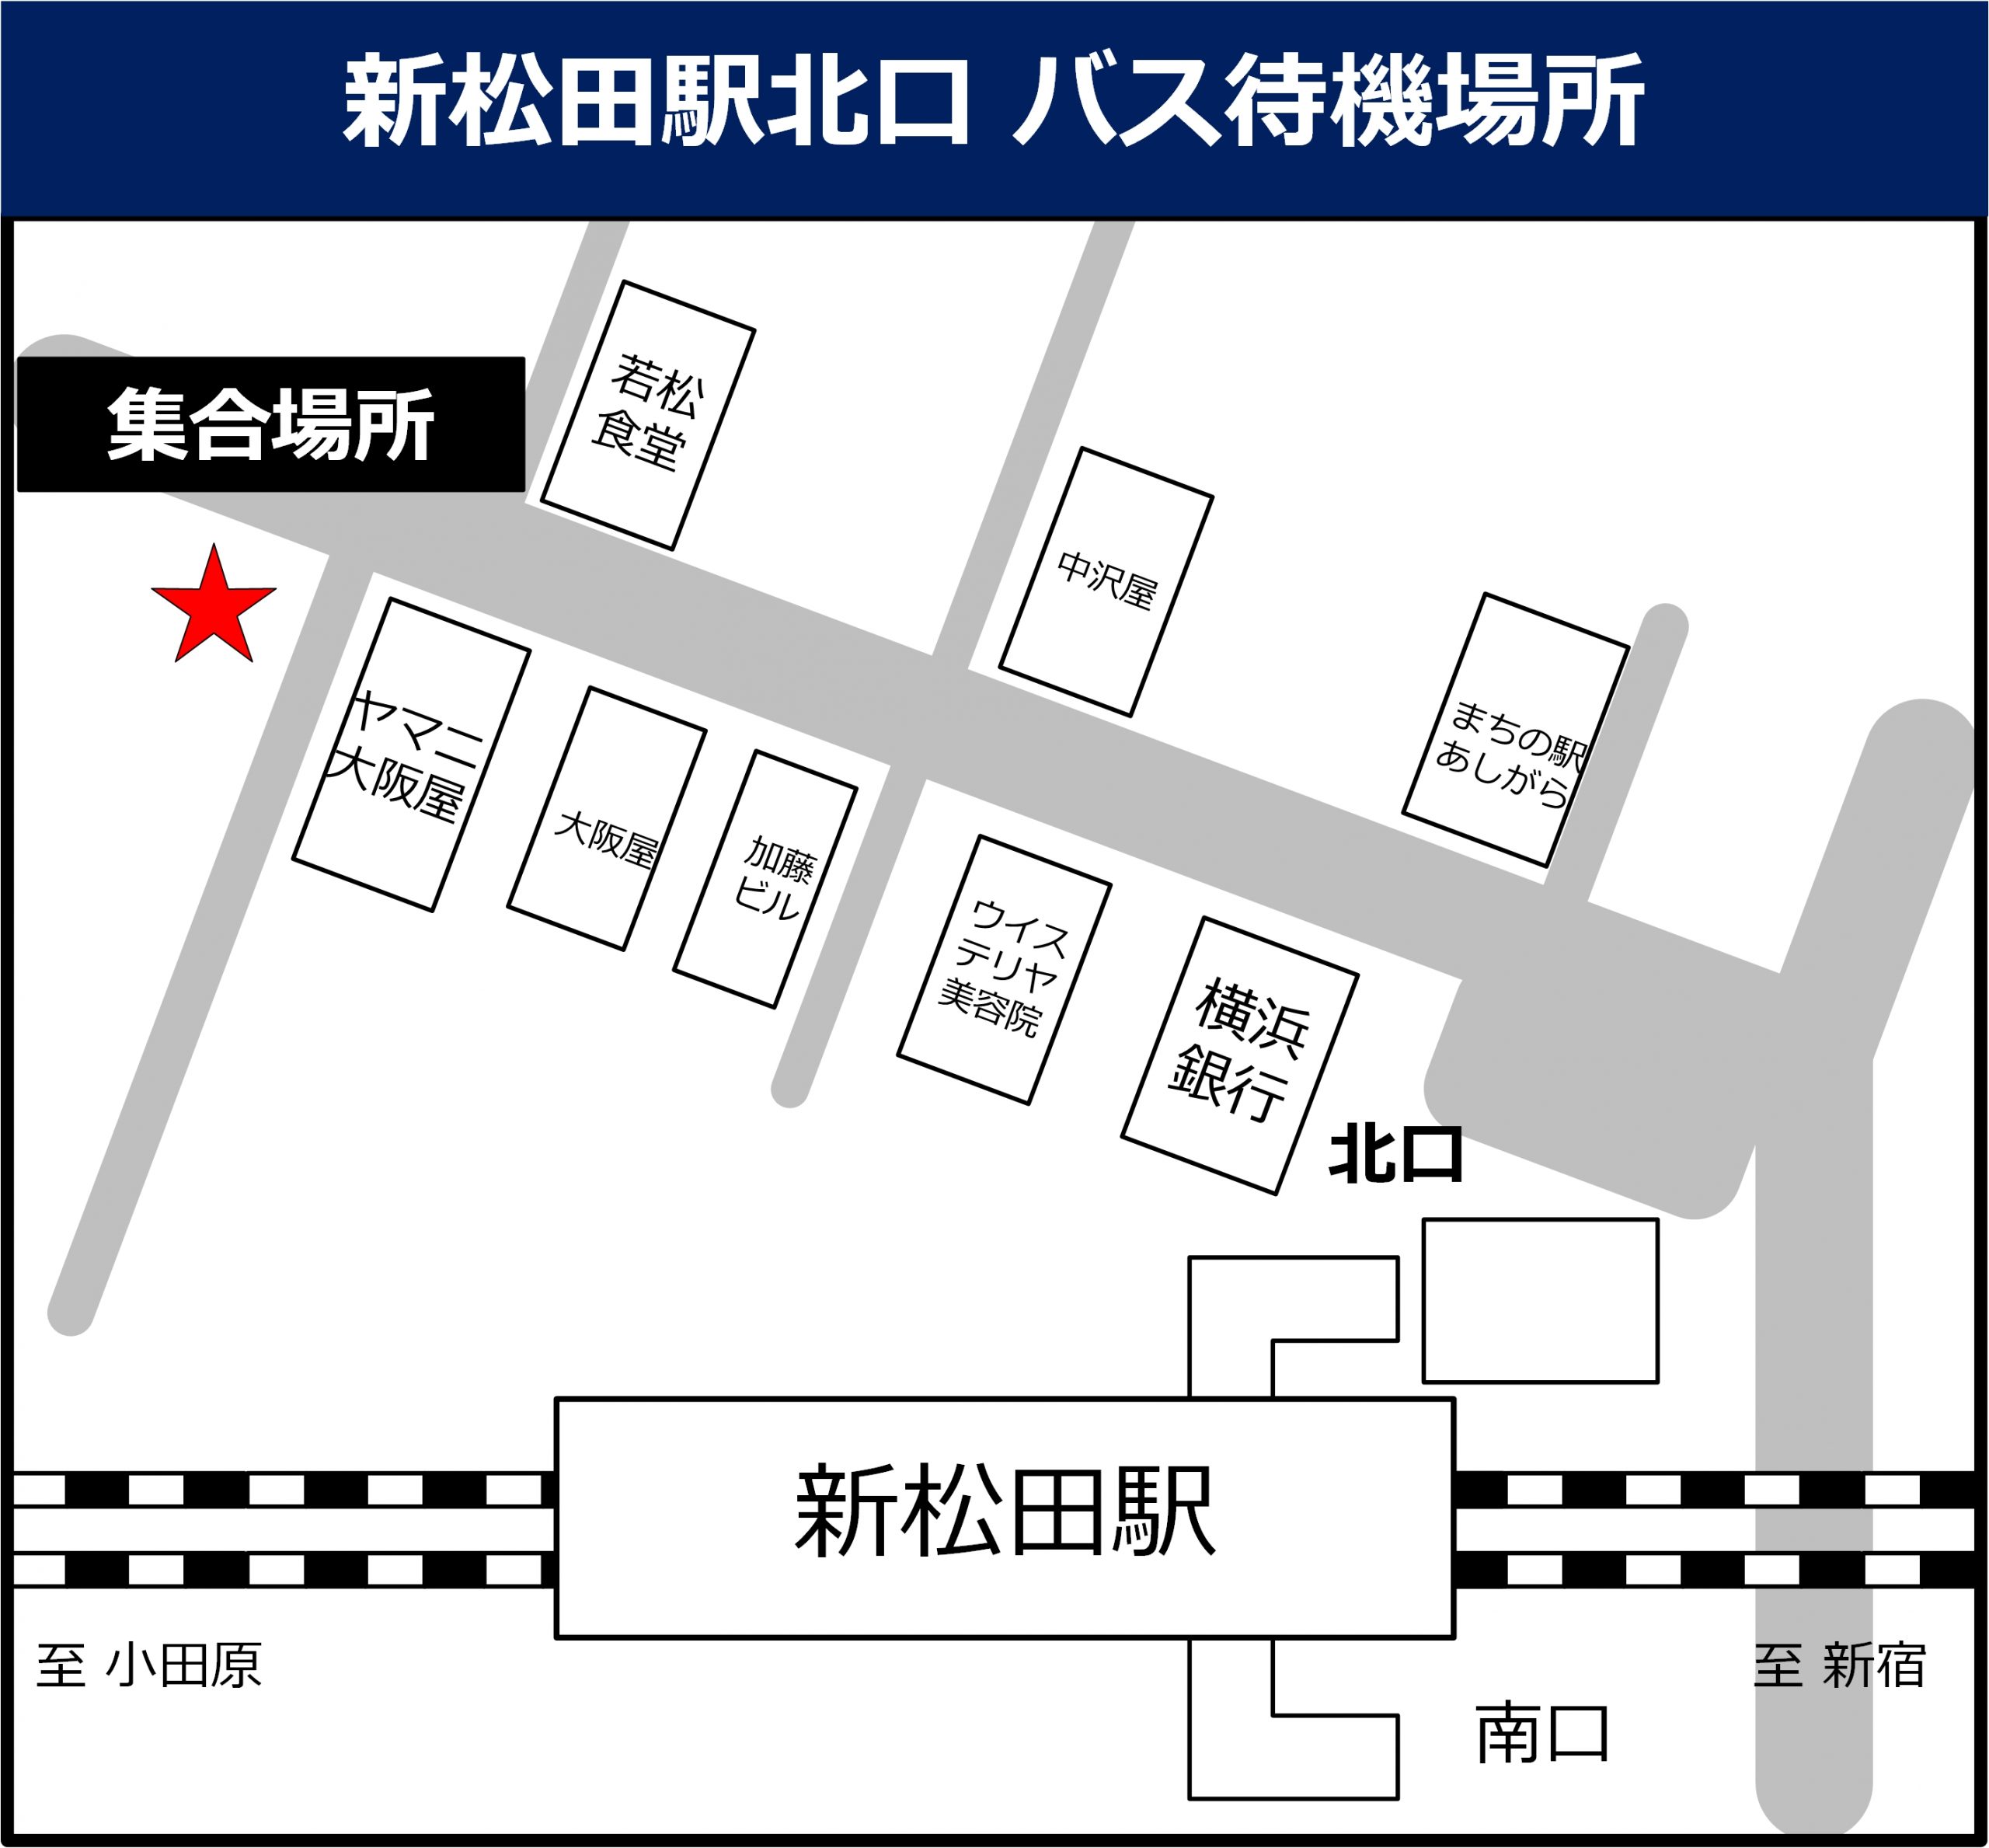 新松田駅北口 バス待機場所の地図